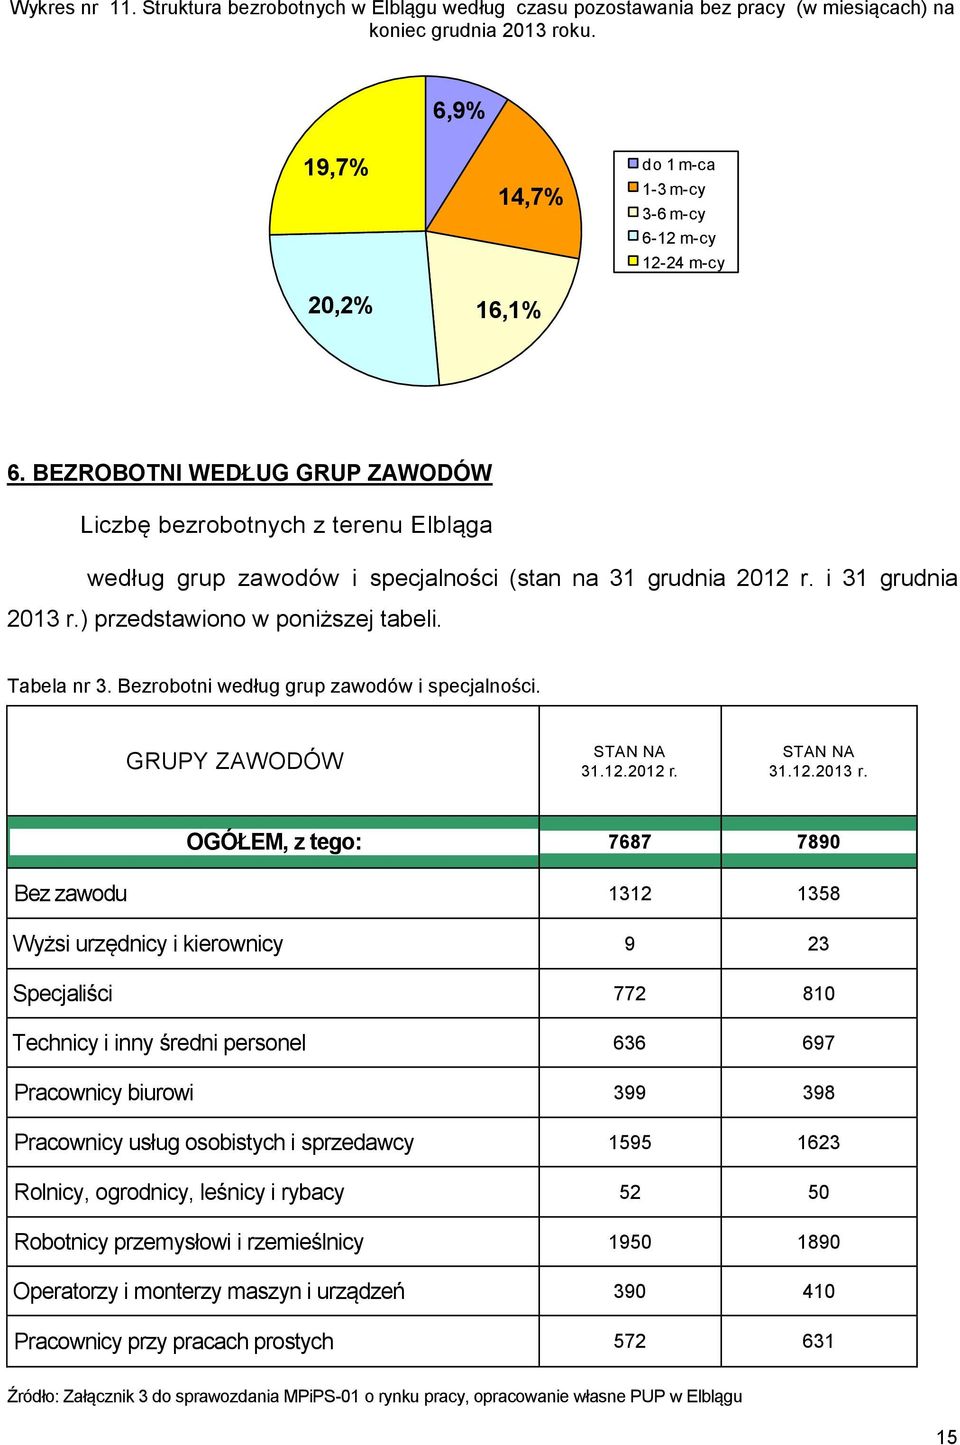 BEZROBOTNI WEDŁUG GRUP ZAWODÓW Liczbę bezrobotnych z terenu Elbląga według grup zawodów i specjalności (stan na 31 grudnia 2012 r. i 31 grudnia 2013 r.) przedstawiono w poniższej tabeli. Tabela nr 3.